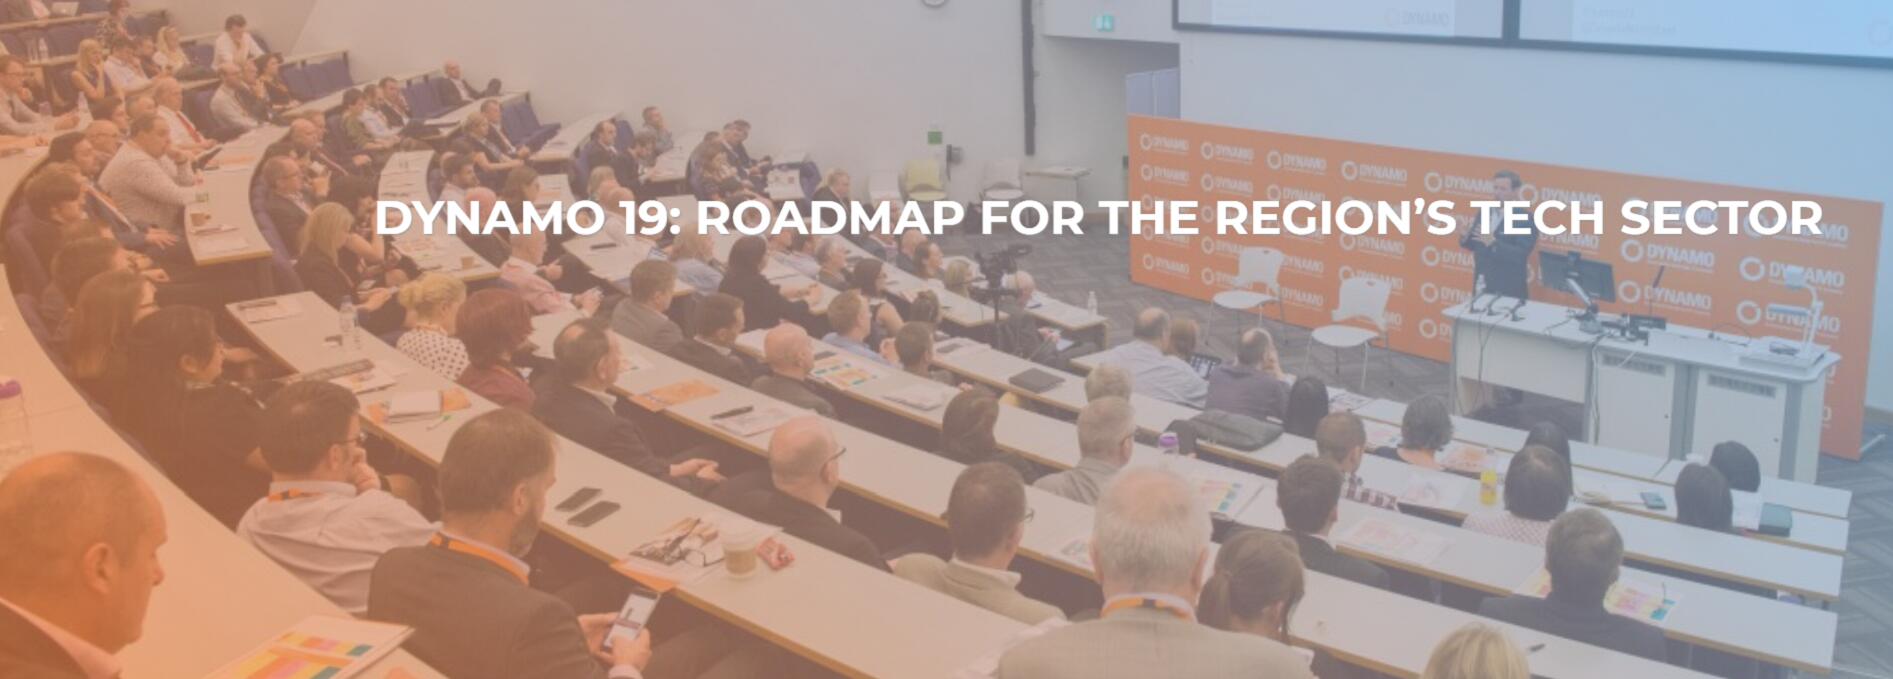 DYNAMO 19: Roadmap for the Region’s Tech Sector